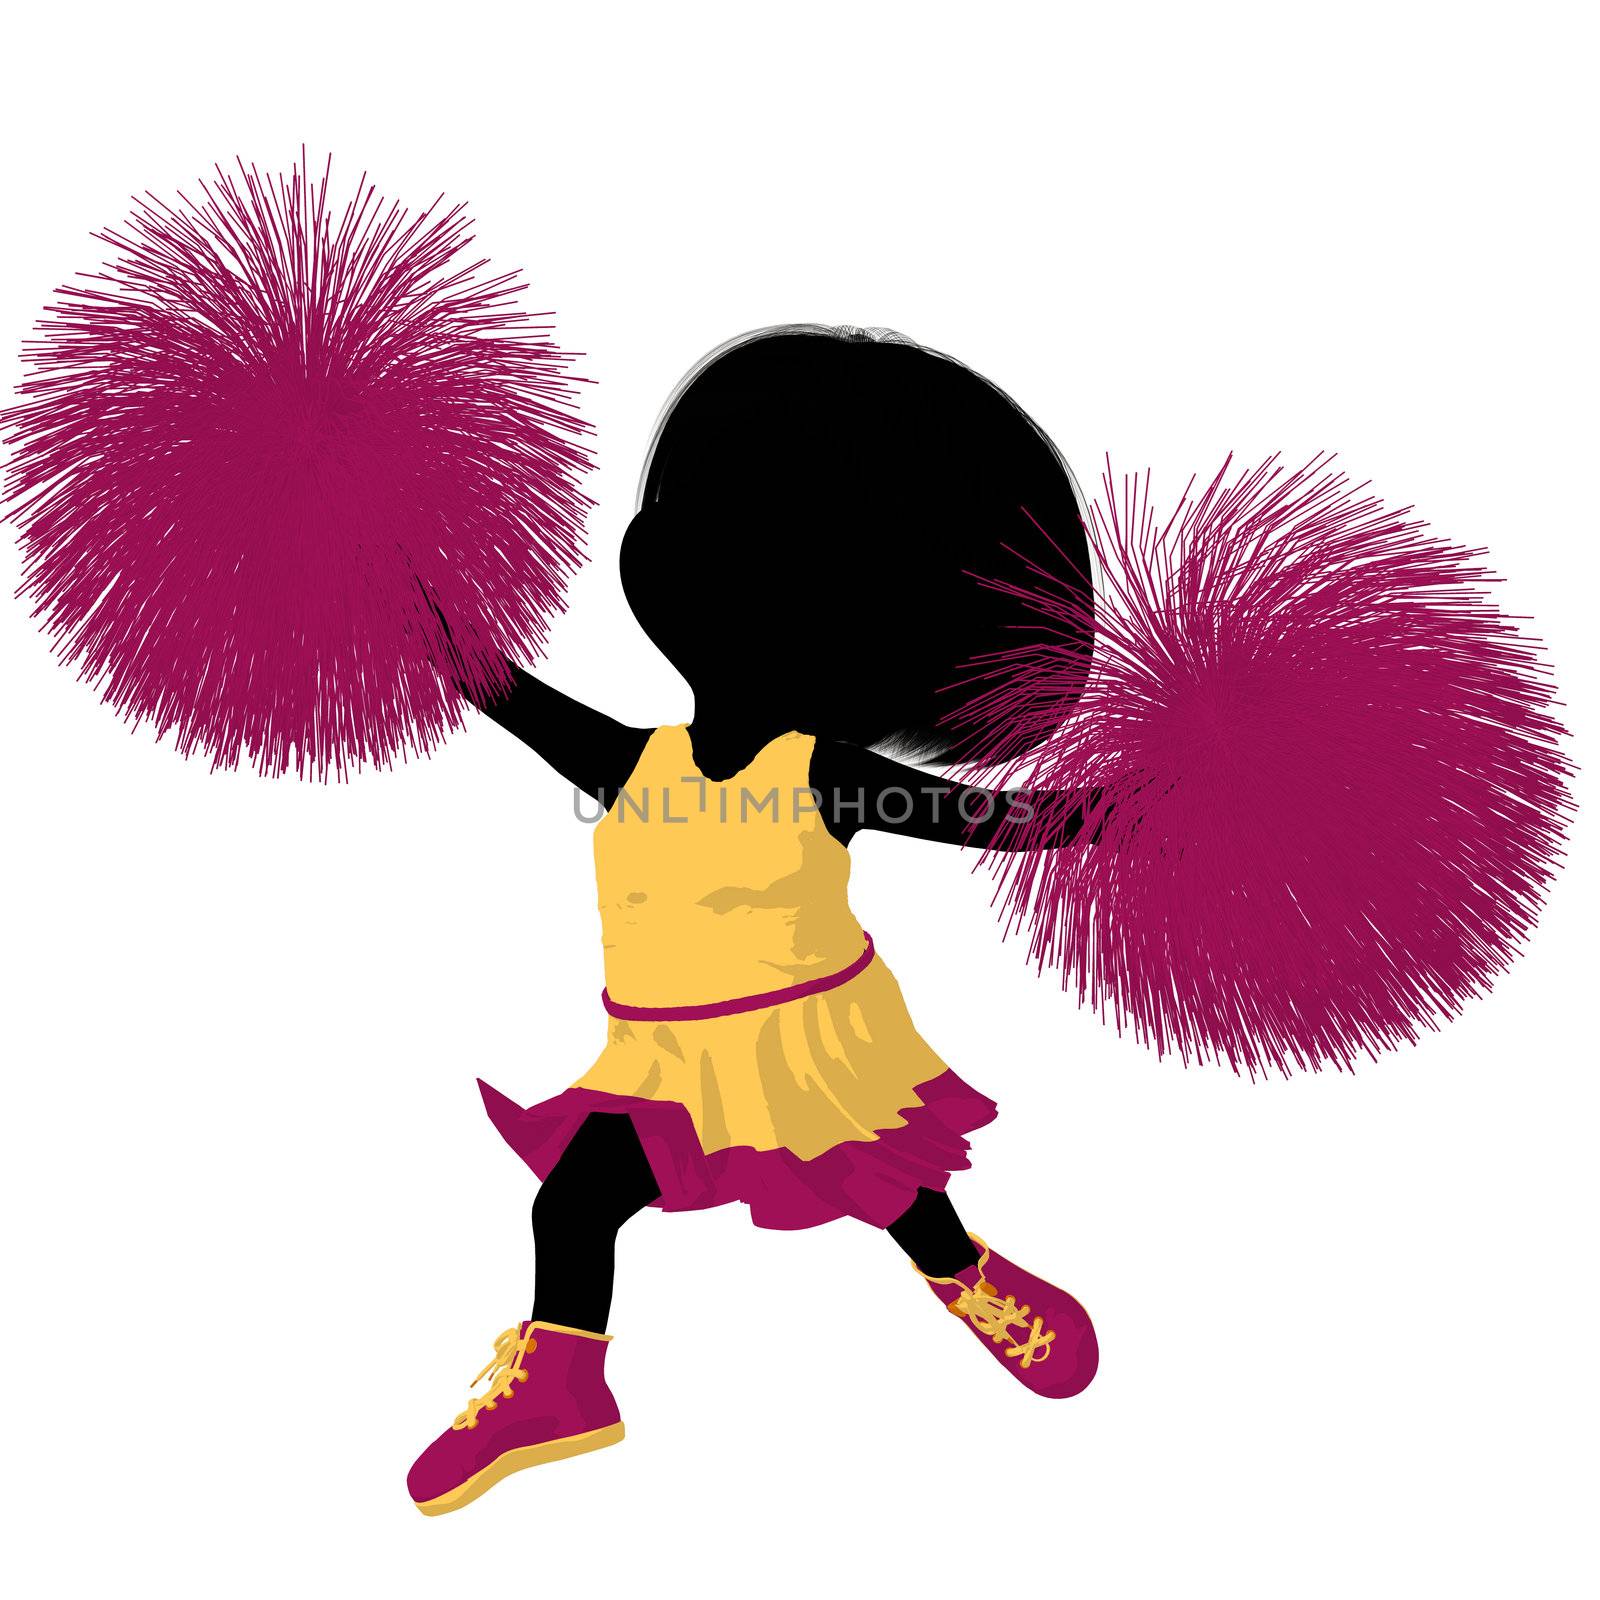 Little Cheer Girl Illustration Silhouette by kathygold